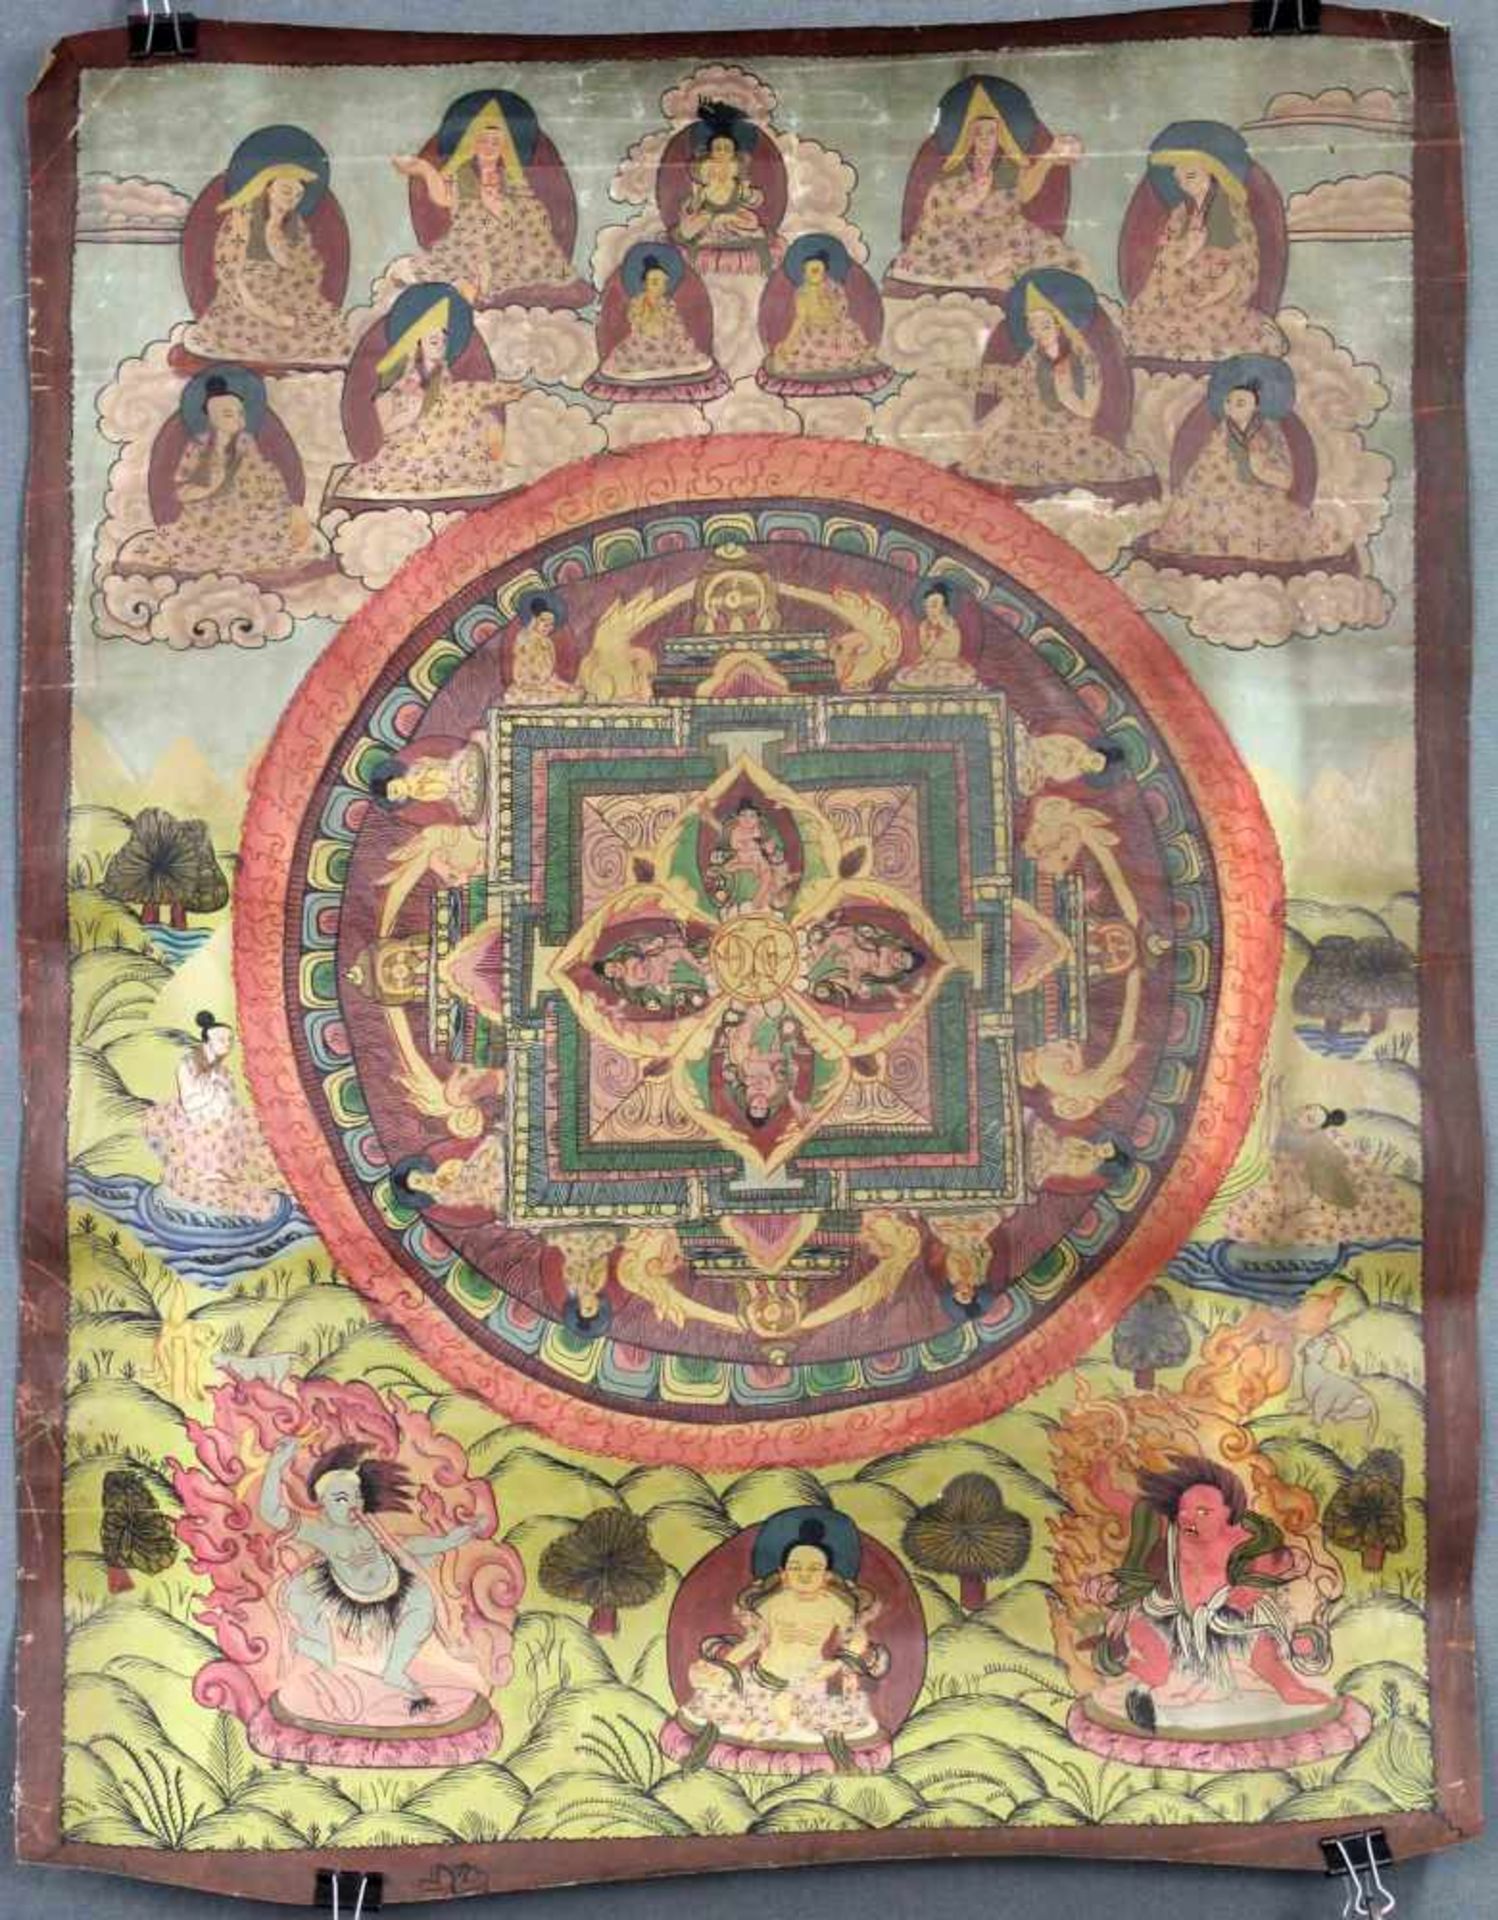 Mandala, China / Tibet alt.56 cm x 44 cm. Gemälde. Die Abschlusskrone des Lhasa Palastes deutlich zu